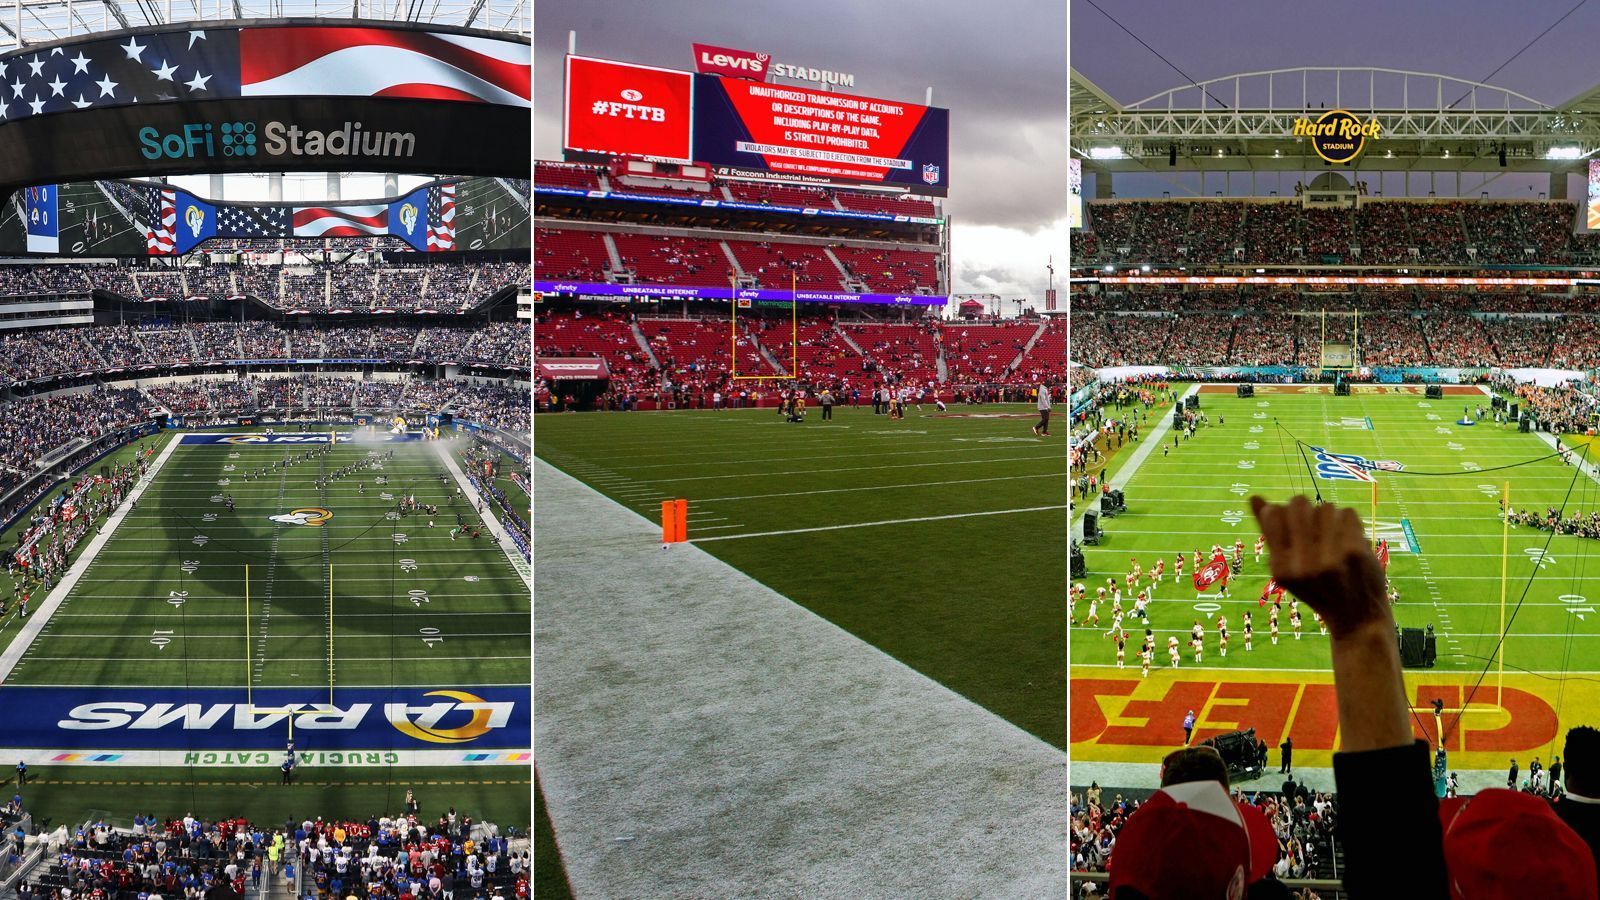 <strong>NFL: Die Gastgeber-Städte des Super Bowls</strong><br>
                Die Super-Bowl-Standorte bis 2027 sind fix. 2025 geht es nach New Orleans, 2026 nach Santa Clara und 2027 findet das Endspiel der NFL in Los Angeles statt. <em><strong>ran</strong></em> zeigt, in welchen Städten der Super Bowl bislang am häufigsten ausgetragen wurde. (Zukünftige Standorte einberechnet/Stand: Februar 2024)
